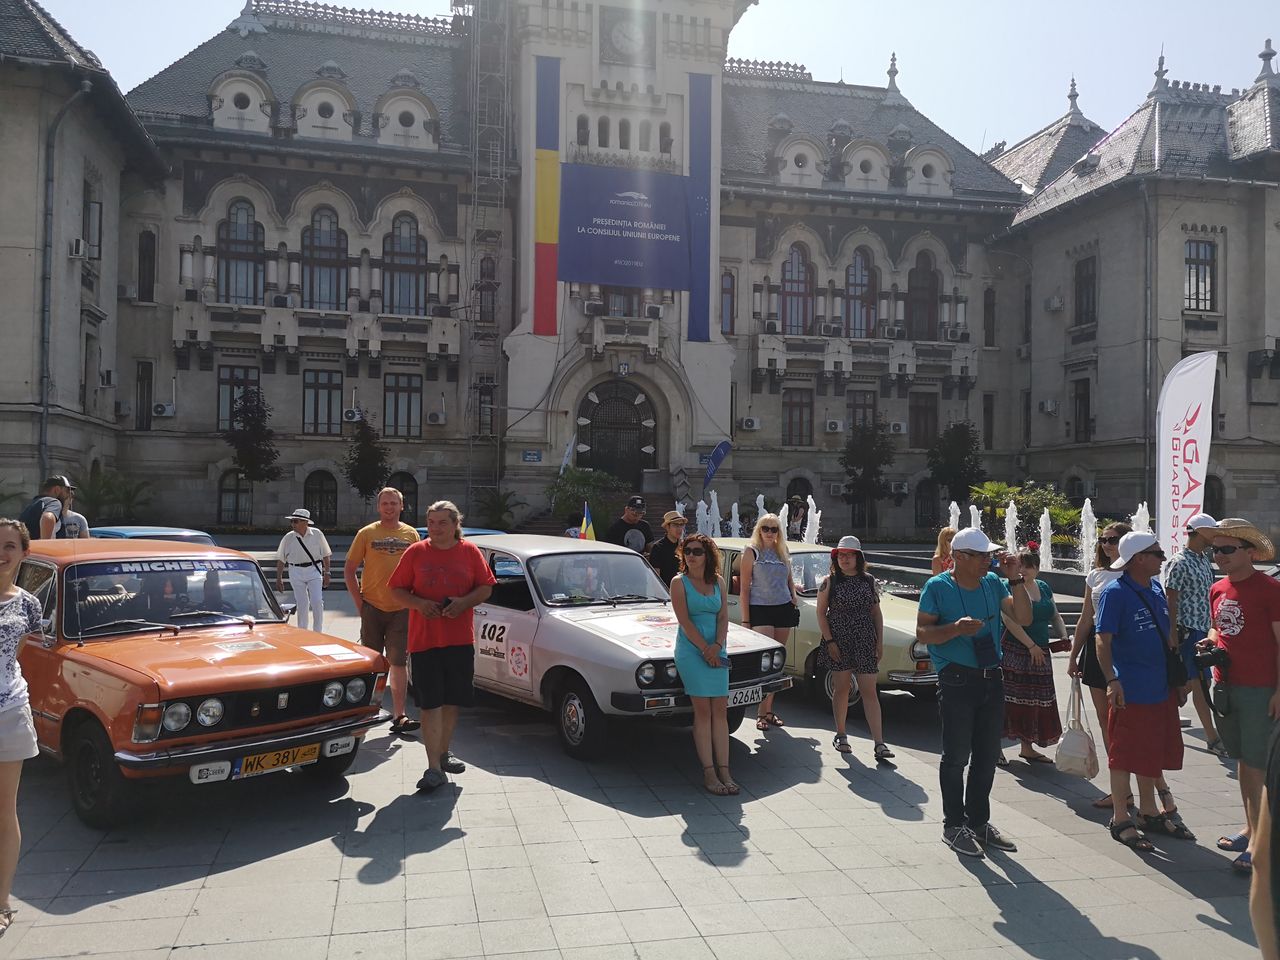 Caravana Go Romania – 3000 km, 10 dni i mnóstwo przygód